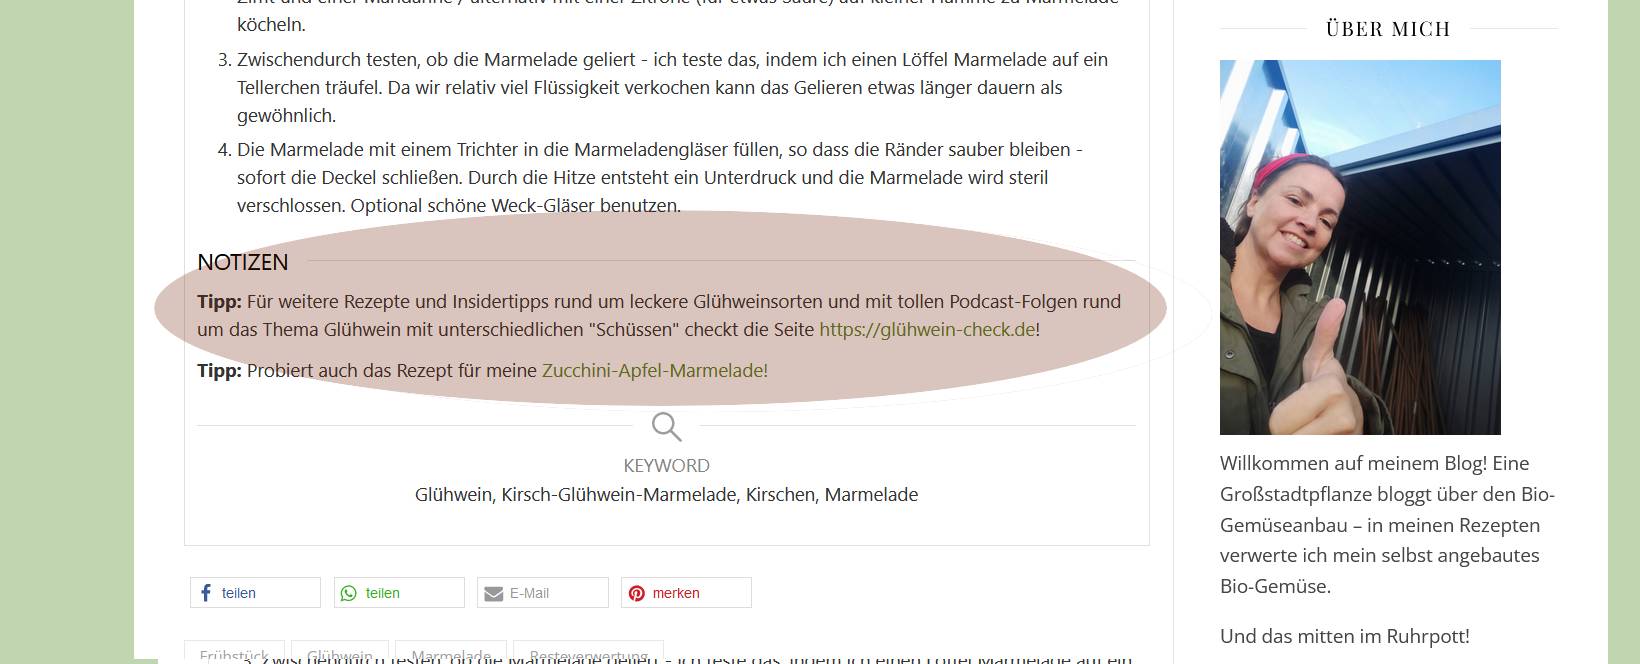 Bild = Screenshot: Der Glühwein-Check wird auf dem gemüsepott.de erwähnt